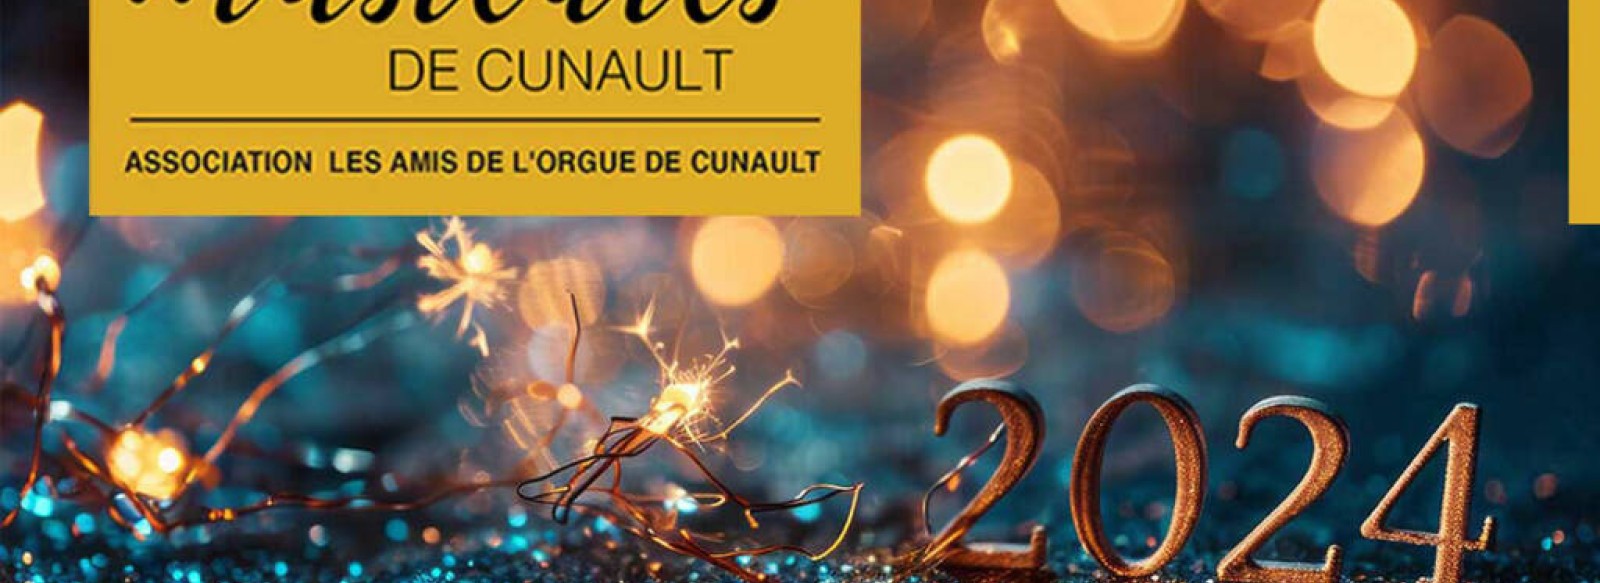 Les Heures Musicales de Cunault : Quatuor a cordes Van Kuijk